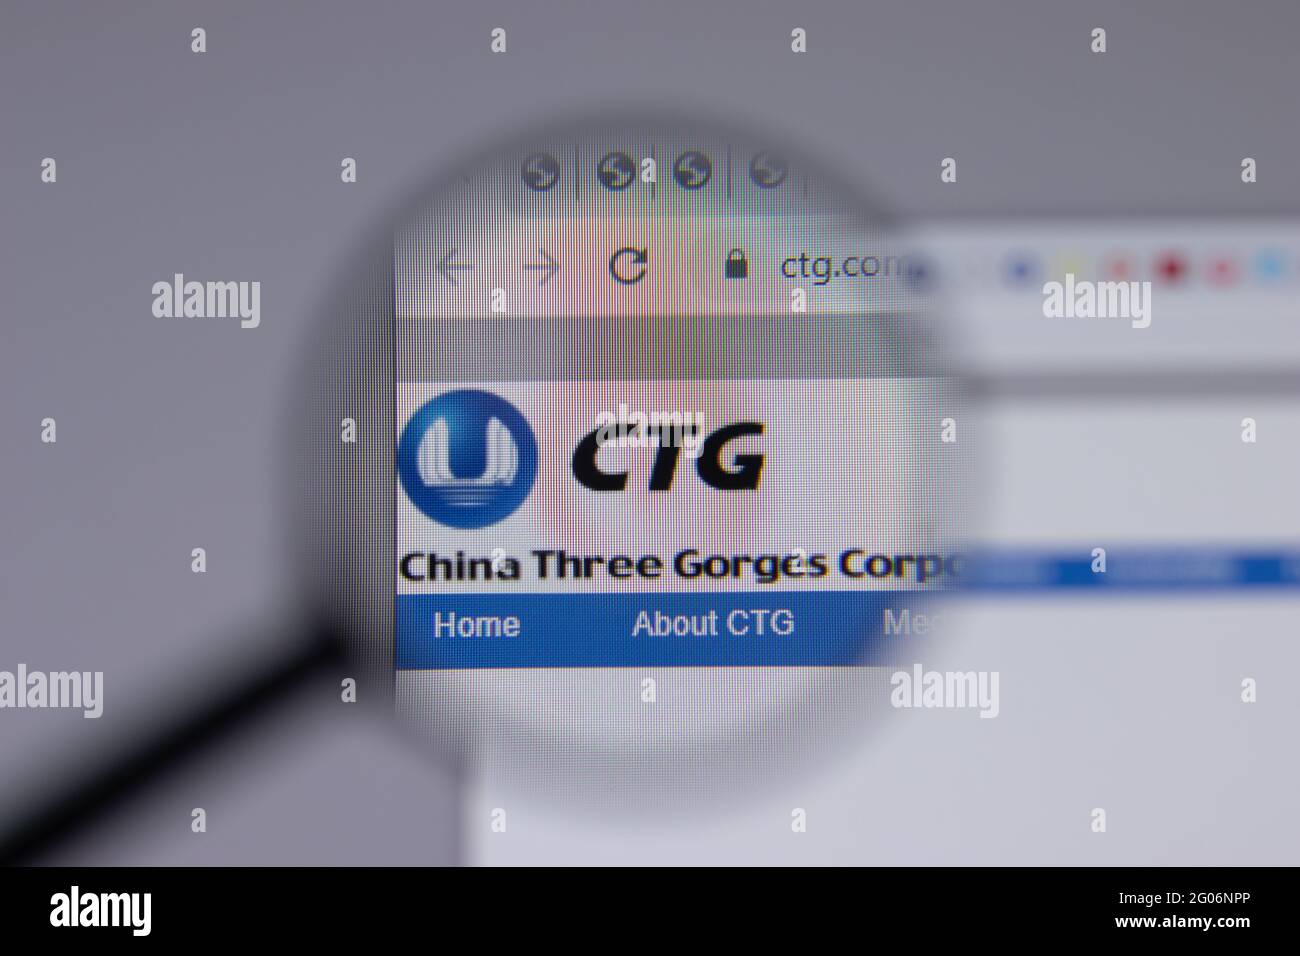 Los Angeles, Kalifornien, USA - 1. Juni 2021: CTG China Three Gorges Corporation Logo oder Symbol auf der Webseite, illustrative redaktionelle Verwendung Stockfoto